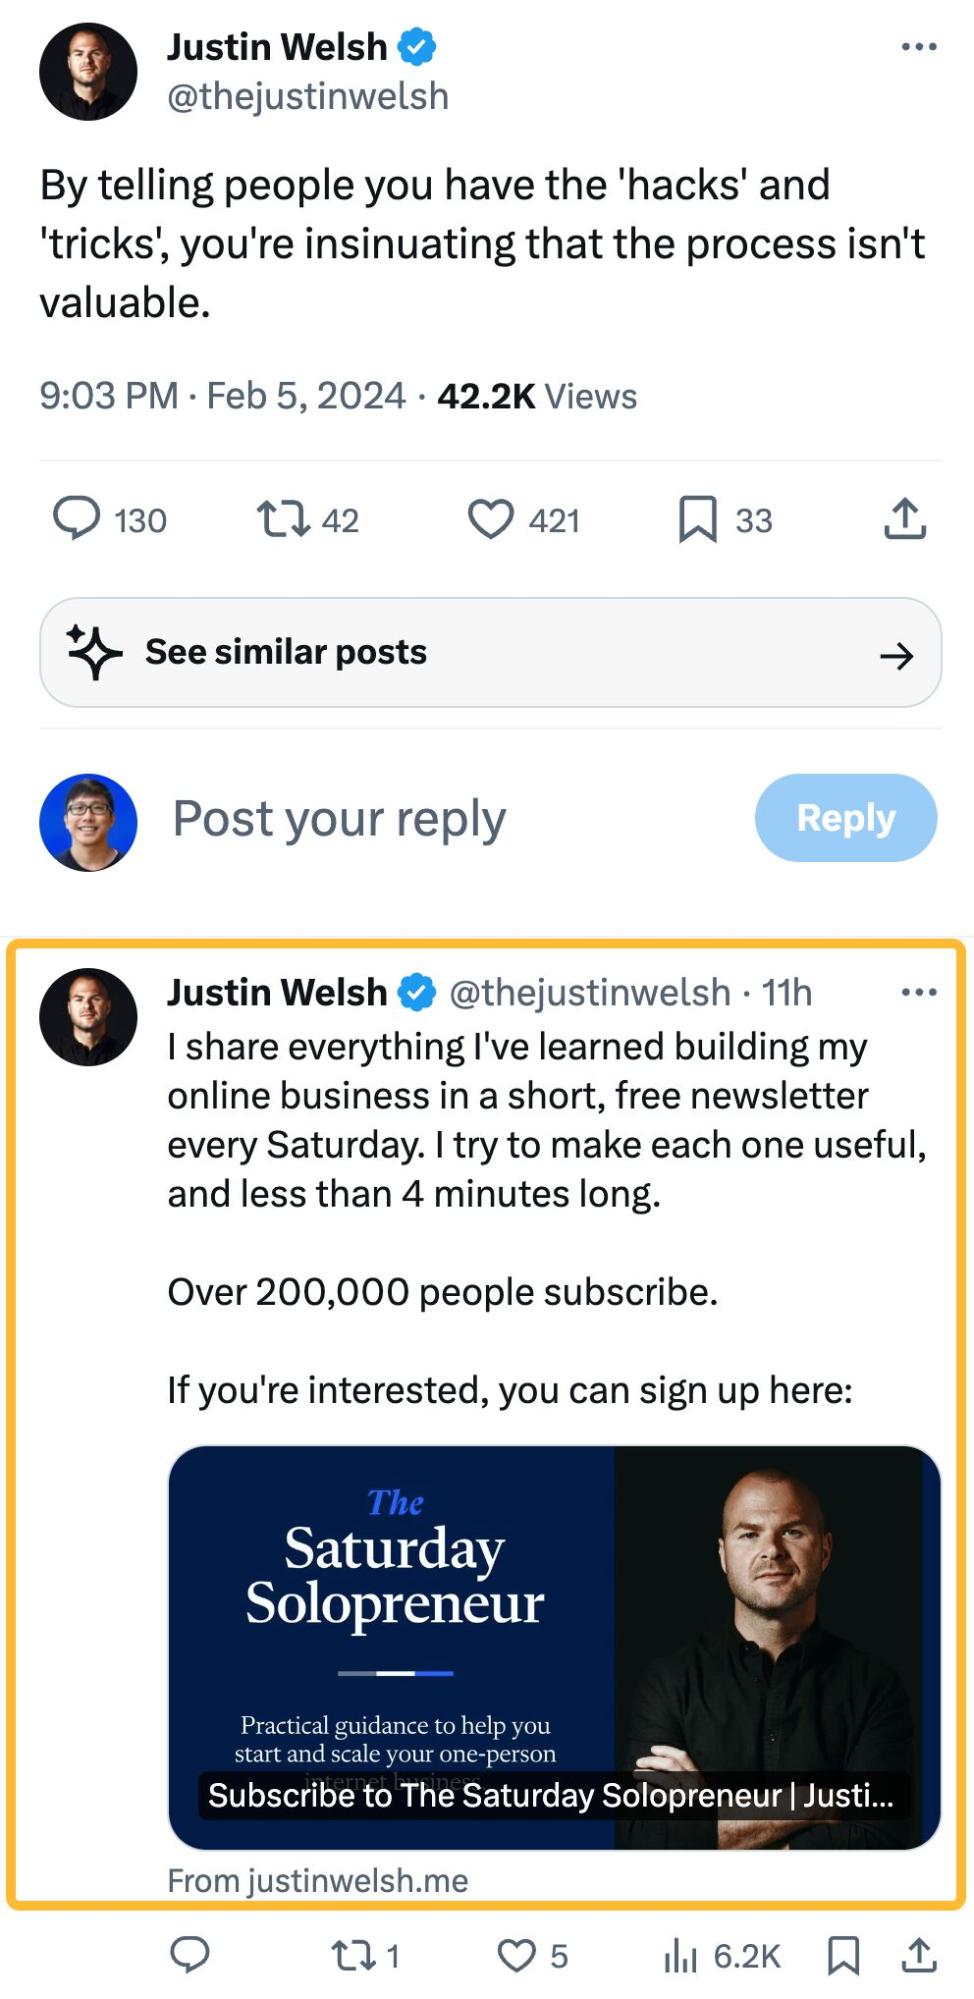 Tweet de Justin Welsh pidiendo a la gente que se suscriba a su newsletter.